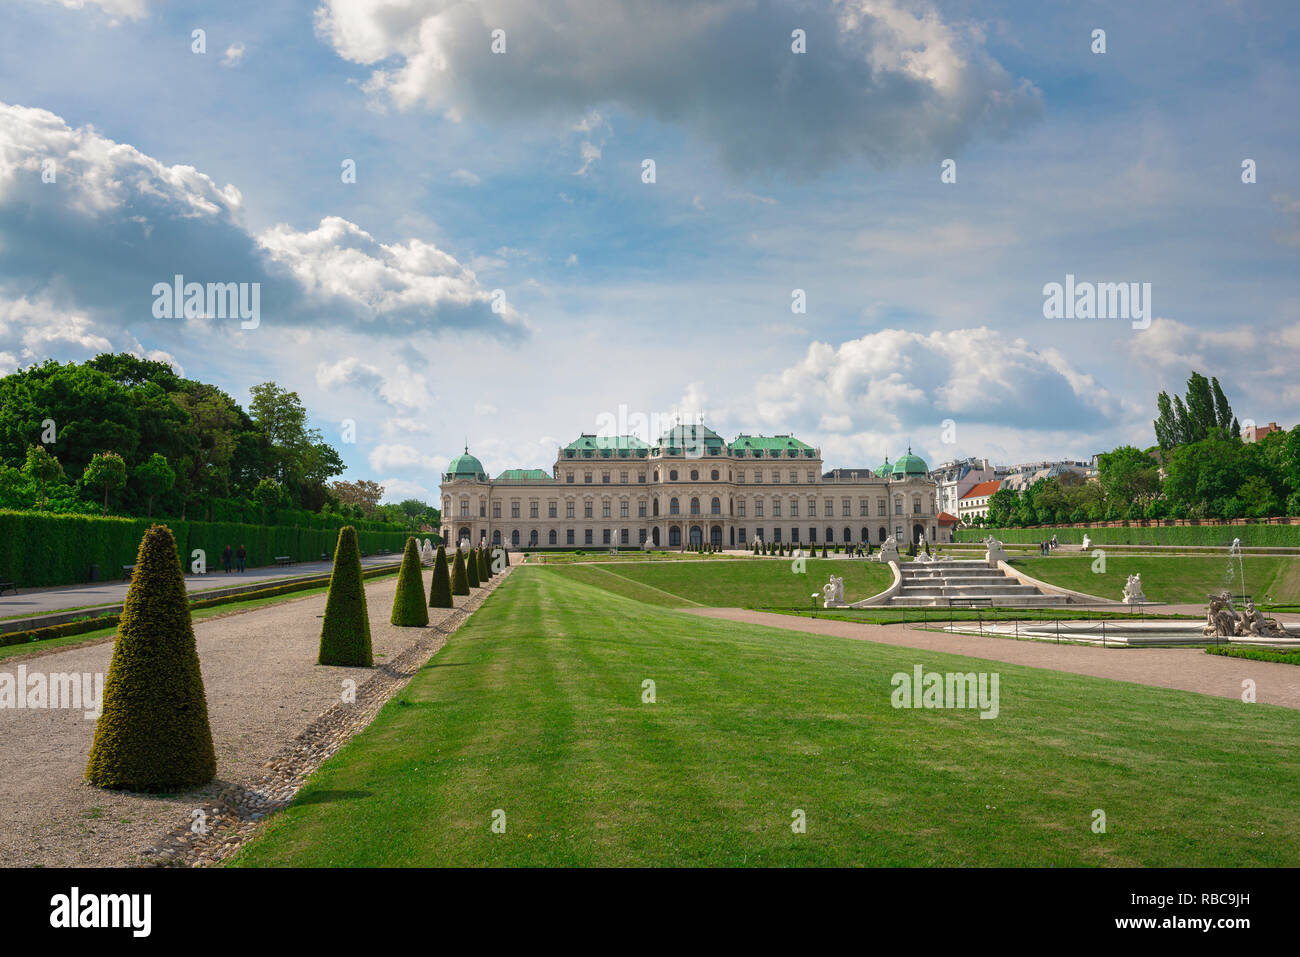 Schloss Belvedere Wien, Blick auf das barocke Schloss Belvedere in Wien mit seinem berühmten Garten im Vordergrund, Wien Österreich. Stockfoto